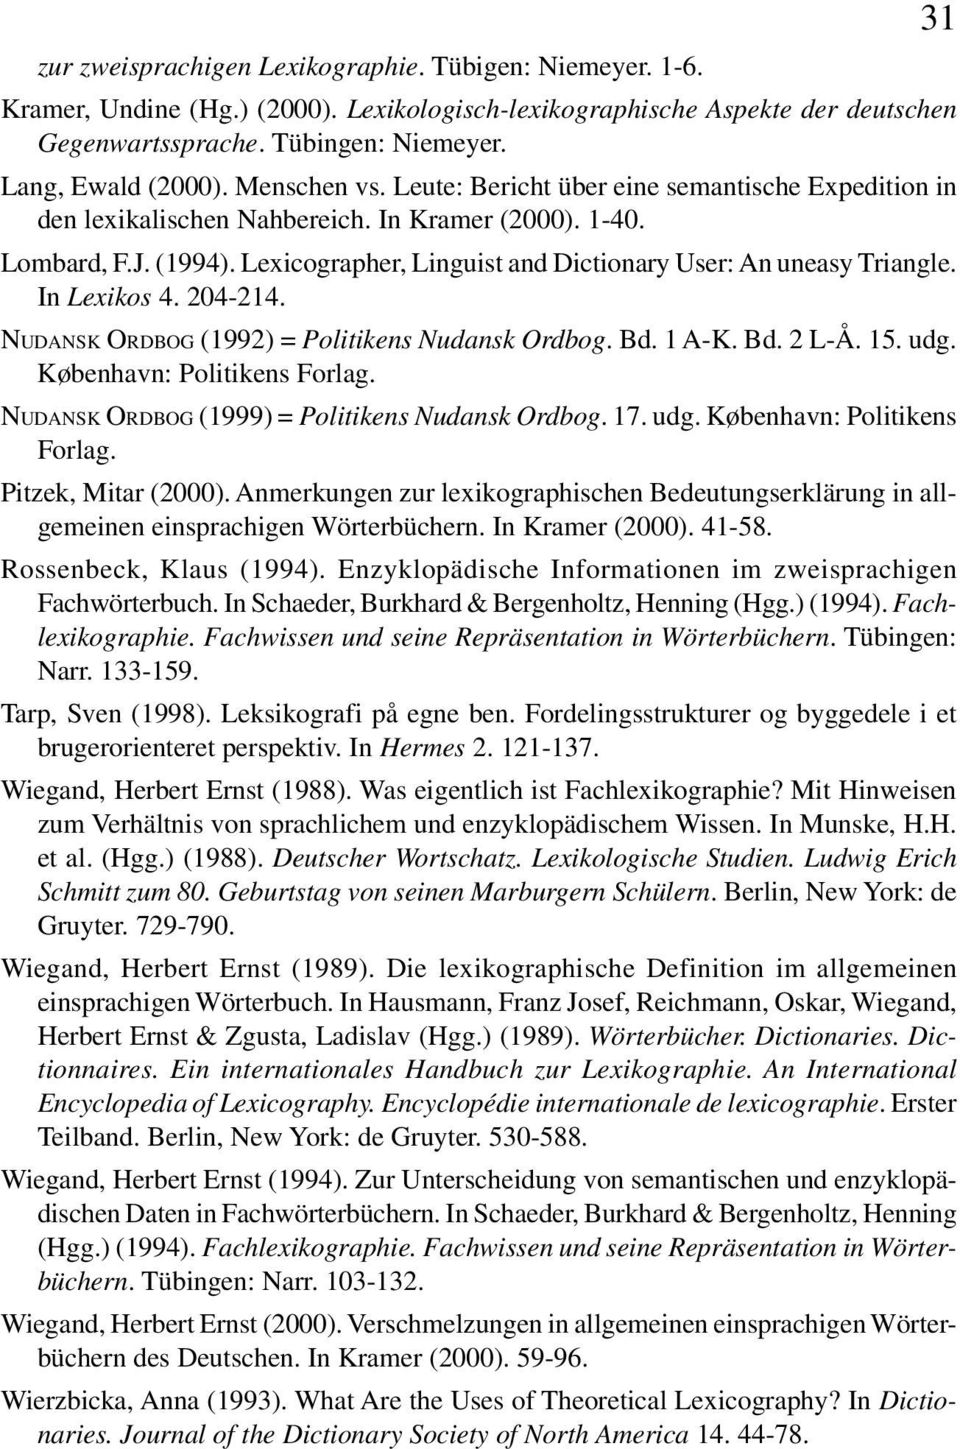 Lexicographer, Linguist and Dictionary User: An uneasy Triangle. In Lexikos 4. 204-214. NUDANSK ORDBOG (1992) = Politikens Nudansk Ordbog. Bd. 1 A-K. Bd. 2 L-Å. 15. udg. København: Politikens Forlag.